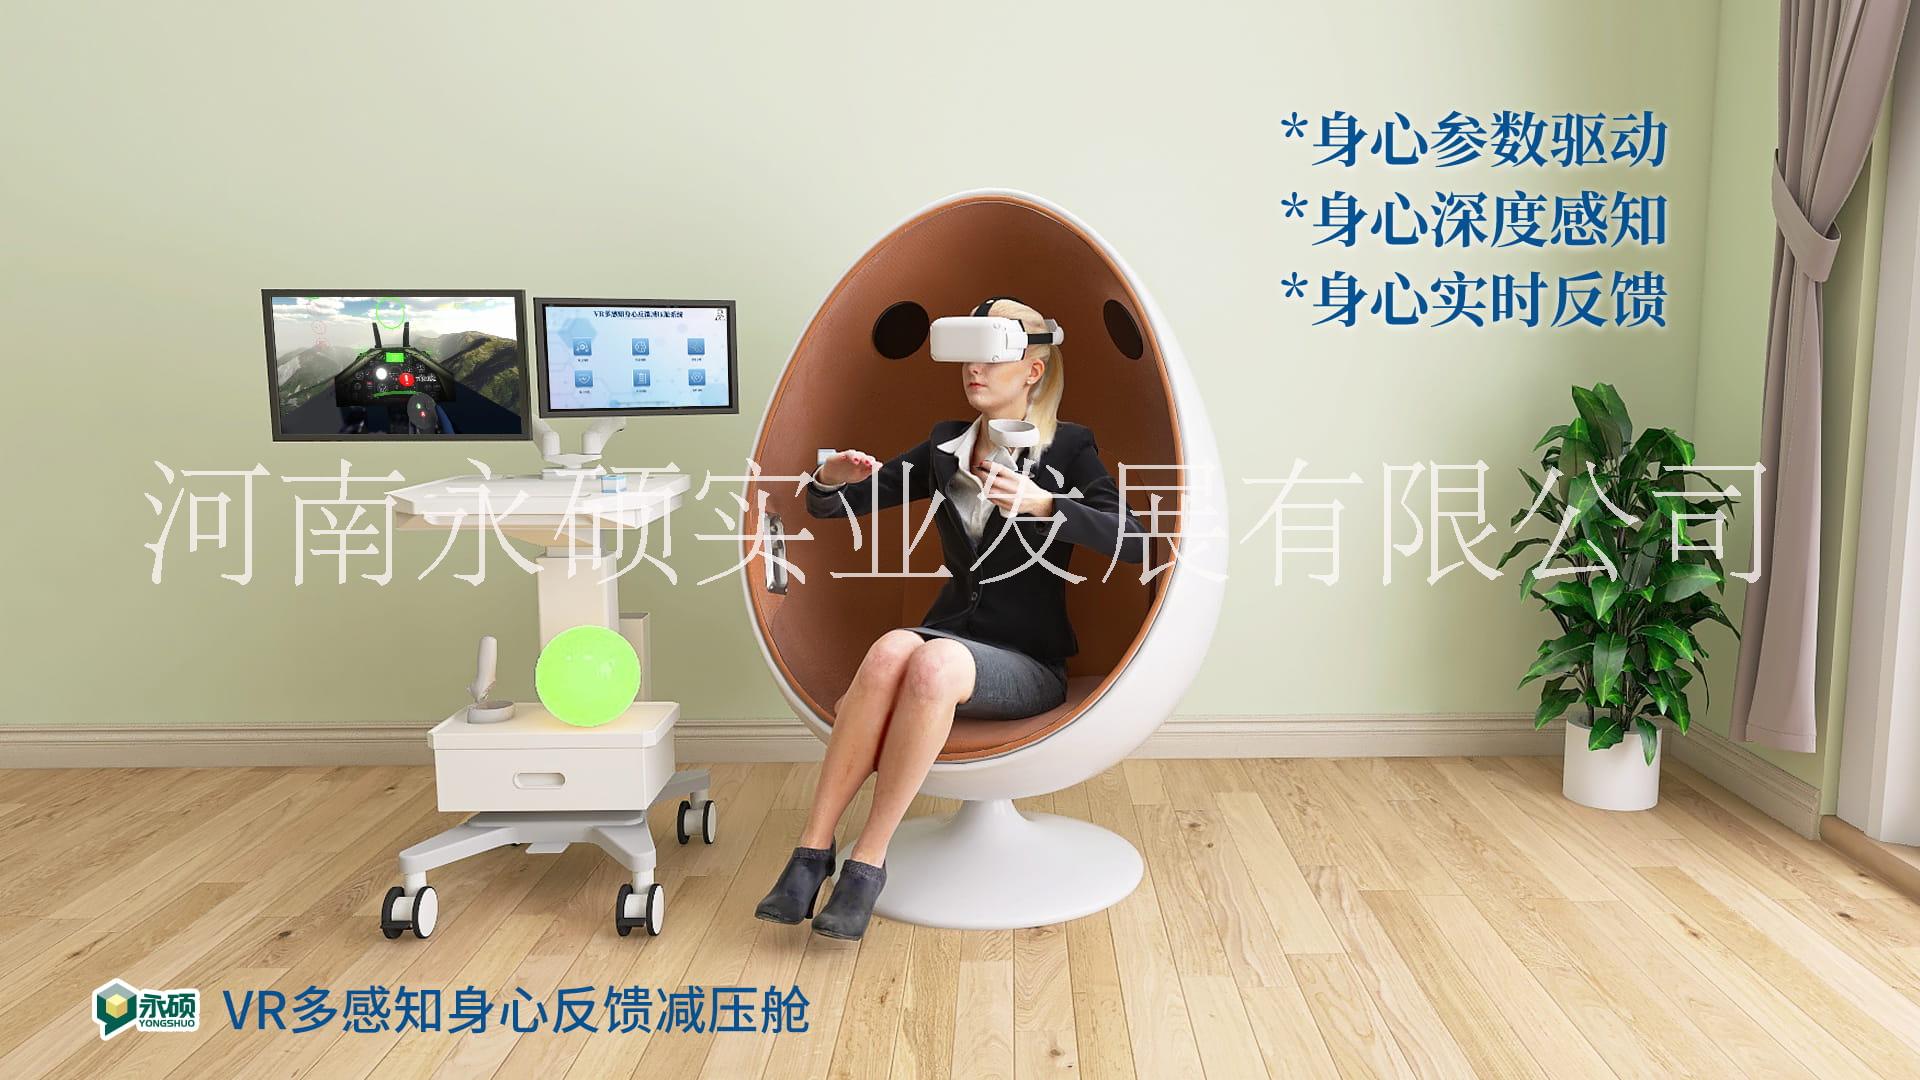 VR多感知身心反馈减压舱--虚拟现实3D，全景感知，身心反馈训练图片